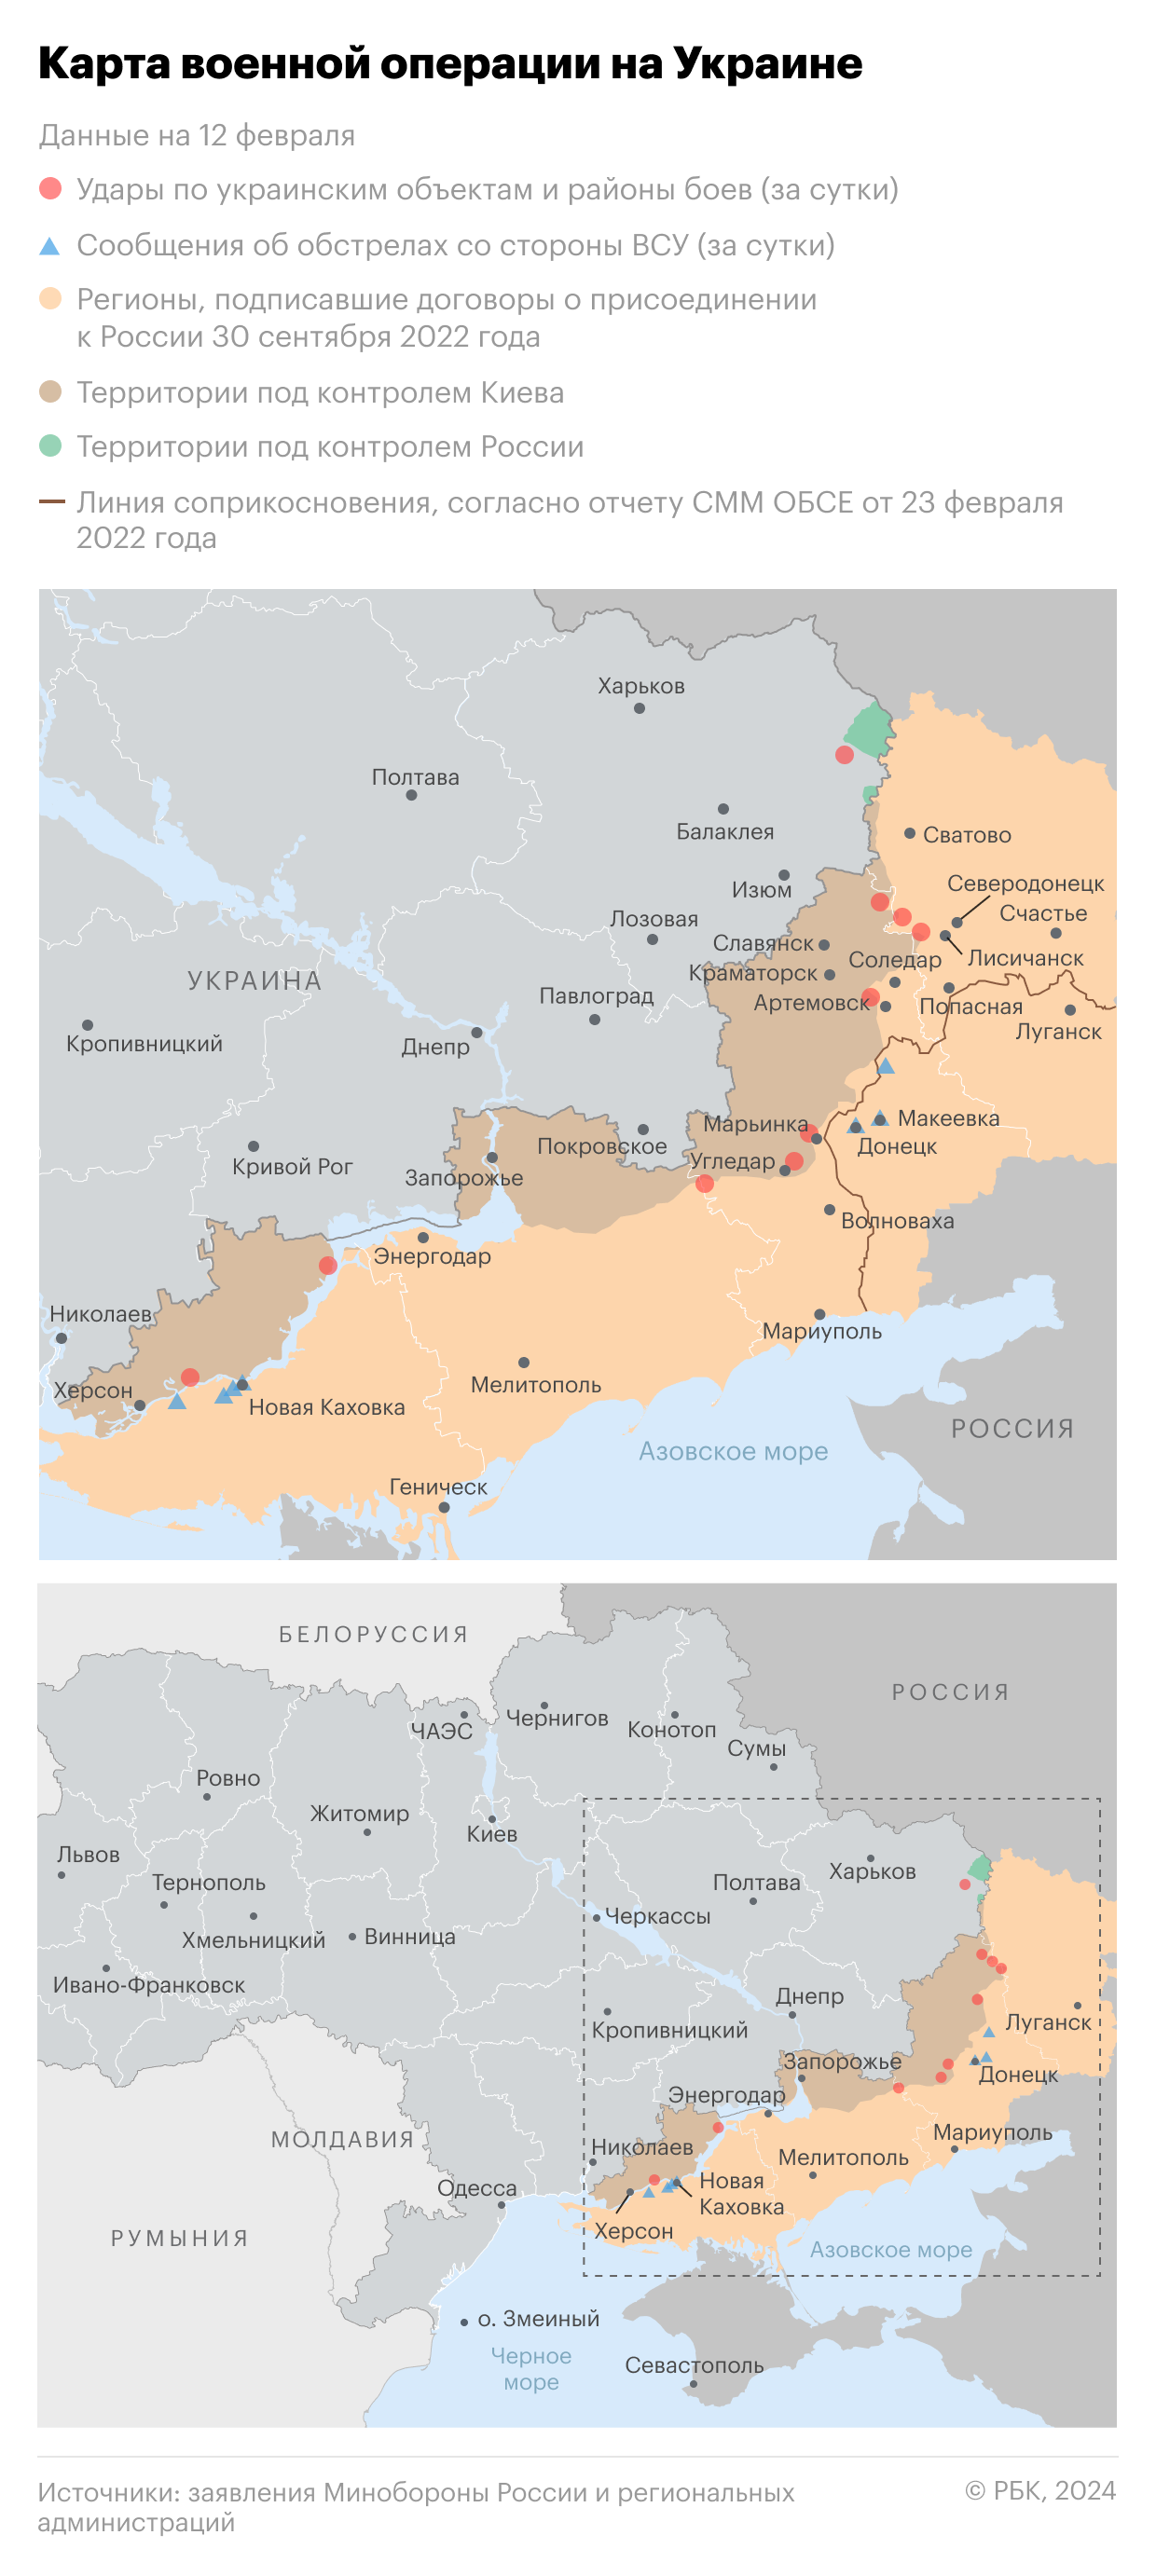 Военная операция на Украине. Карта на 12 февраля